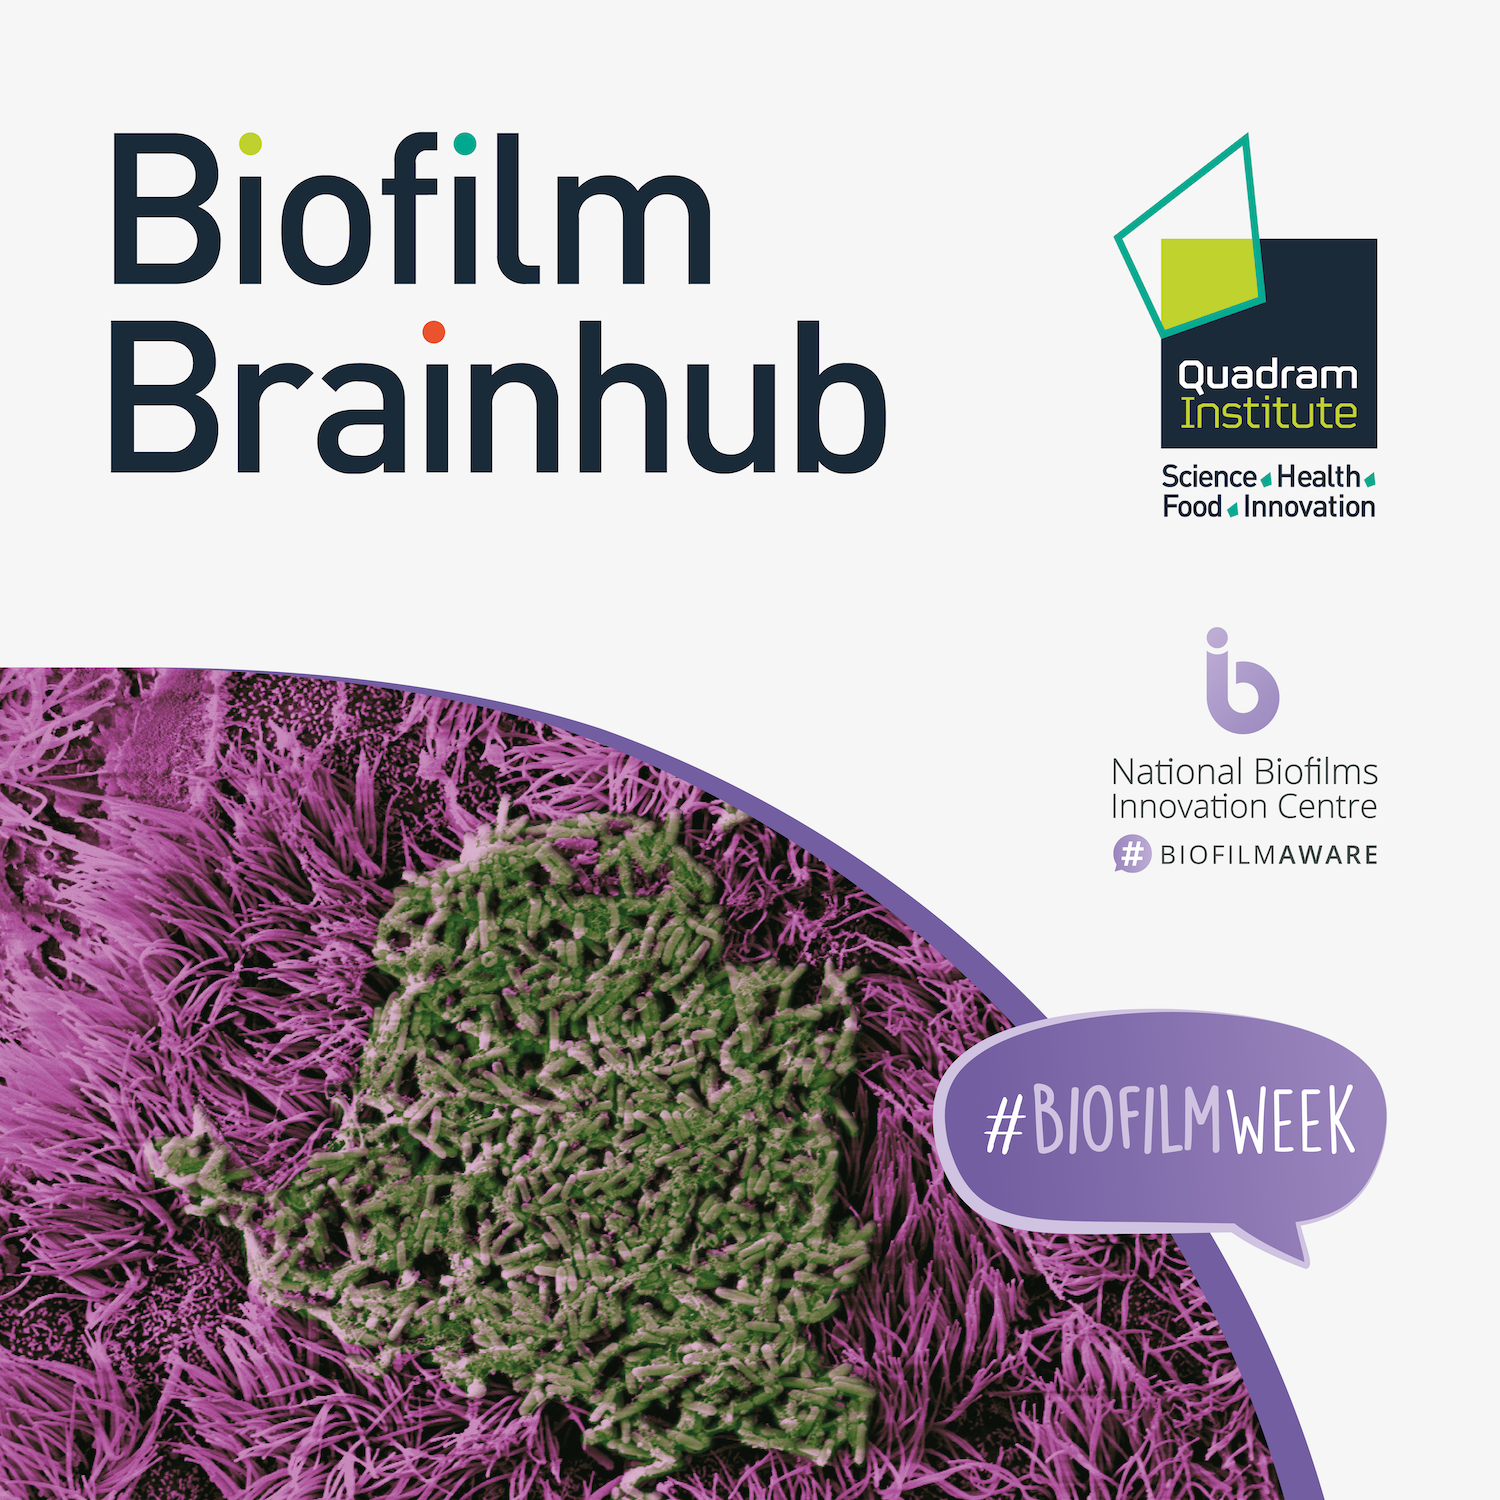 Biofilm Brainhub